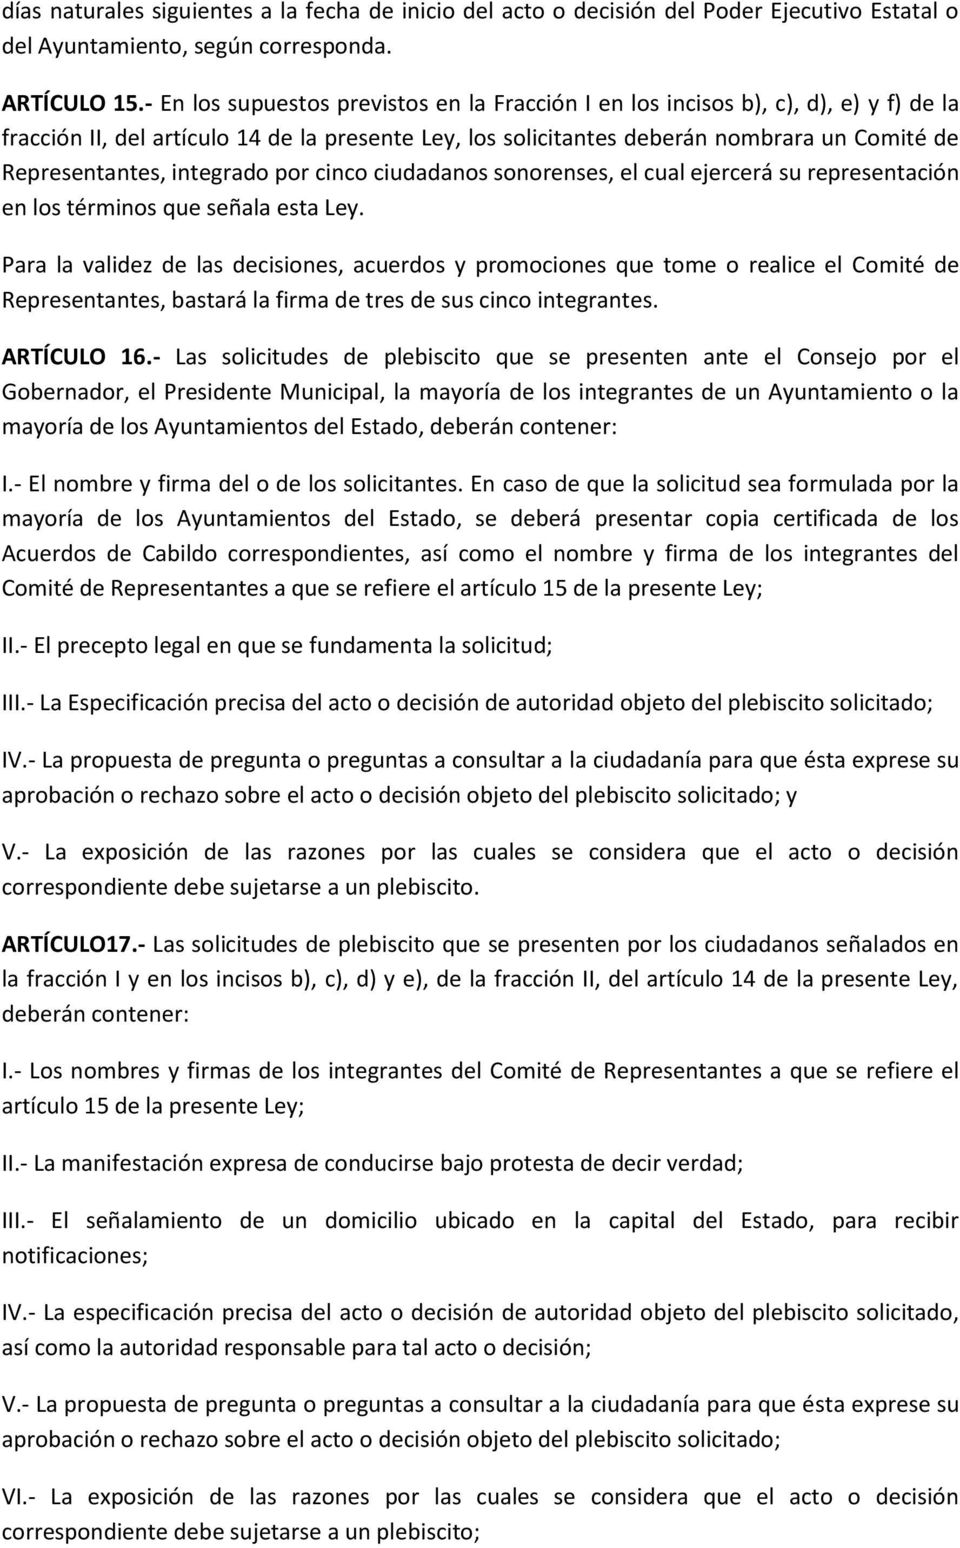 integrado por cinco ciudadanos sonorenses, el cual ejercerá su representación en los términos que señala esta Ley.